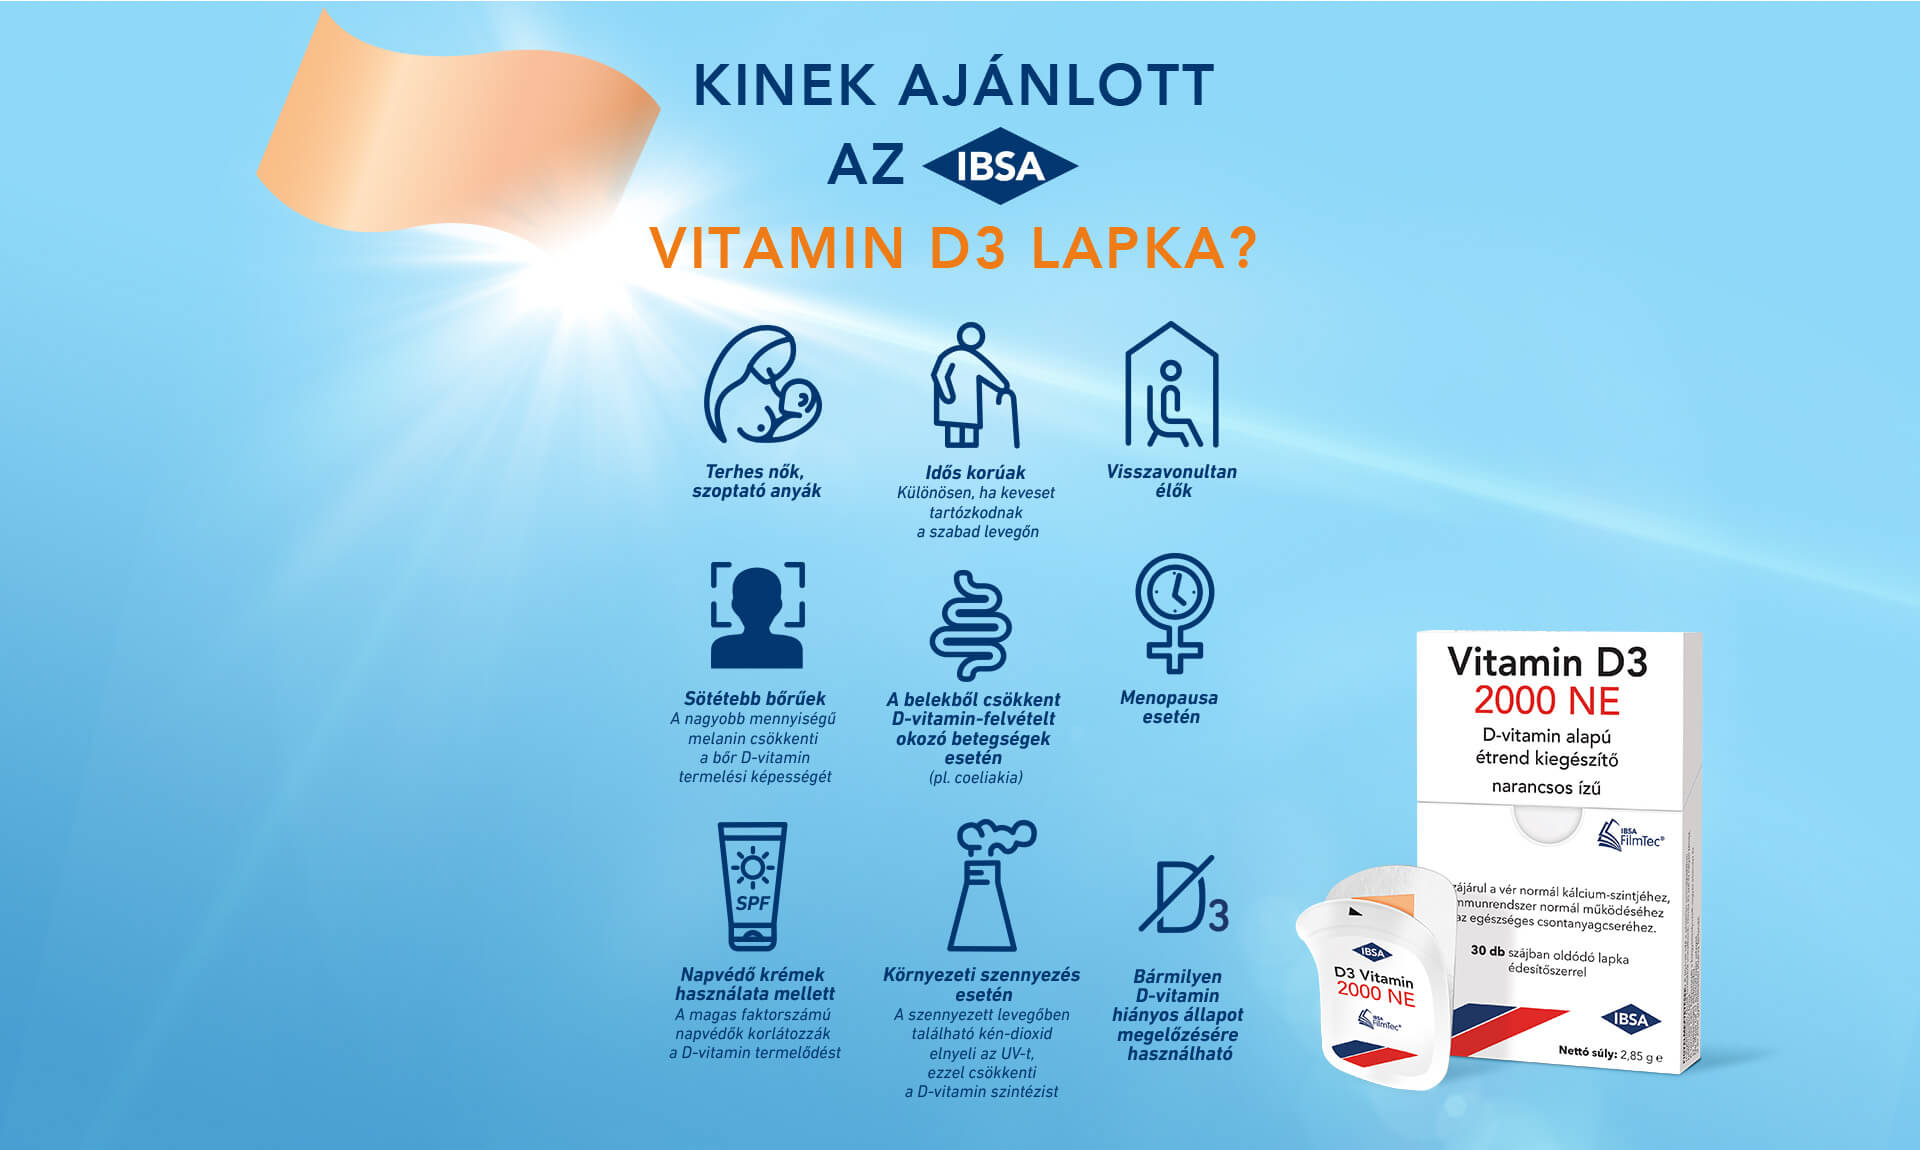 KINEK AJÁNLOTT AZ IBSA VITAMIN D3 LAPKA? Terhes nők, szoptató anyák. Idős korúak. Visszavonultan élőek. Sötétebb bőrűek. A belekből csökkent D-vitamin-felvételt okozó betegségek esetén. Menopausa esetén. Napvédő krémek használata esetén. Bármilyen D-vitamin hiányos állapot megelőzésére használható.